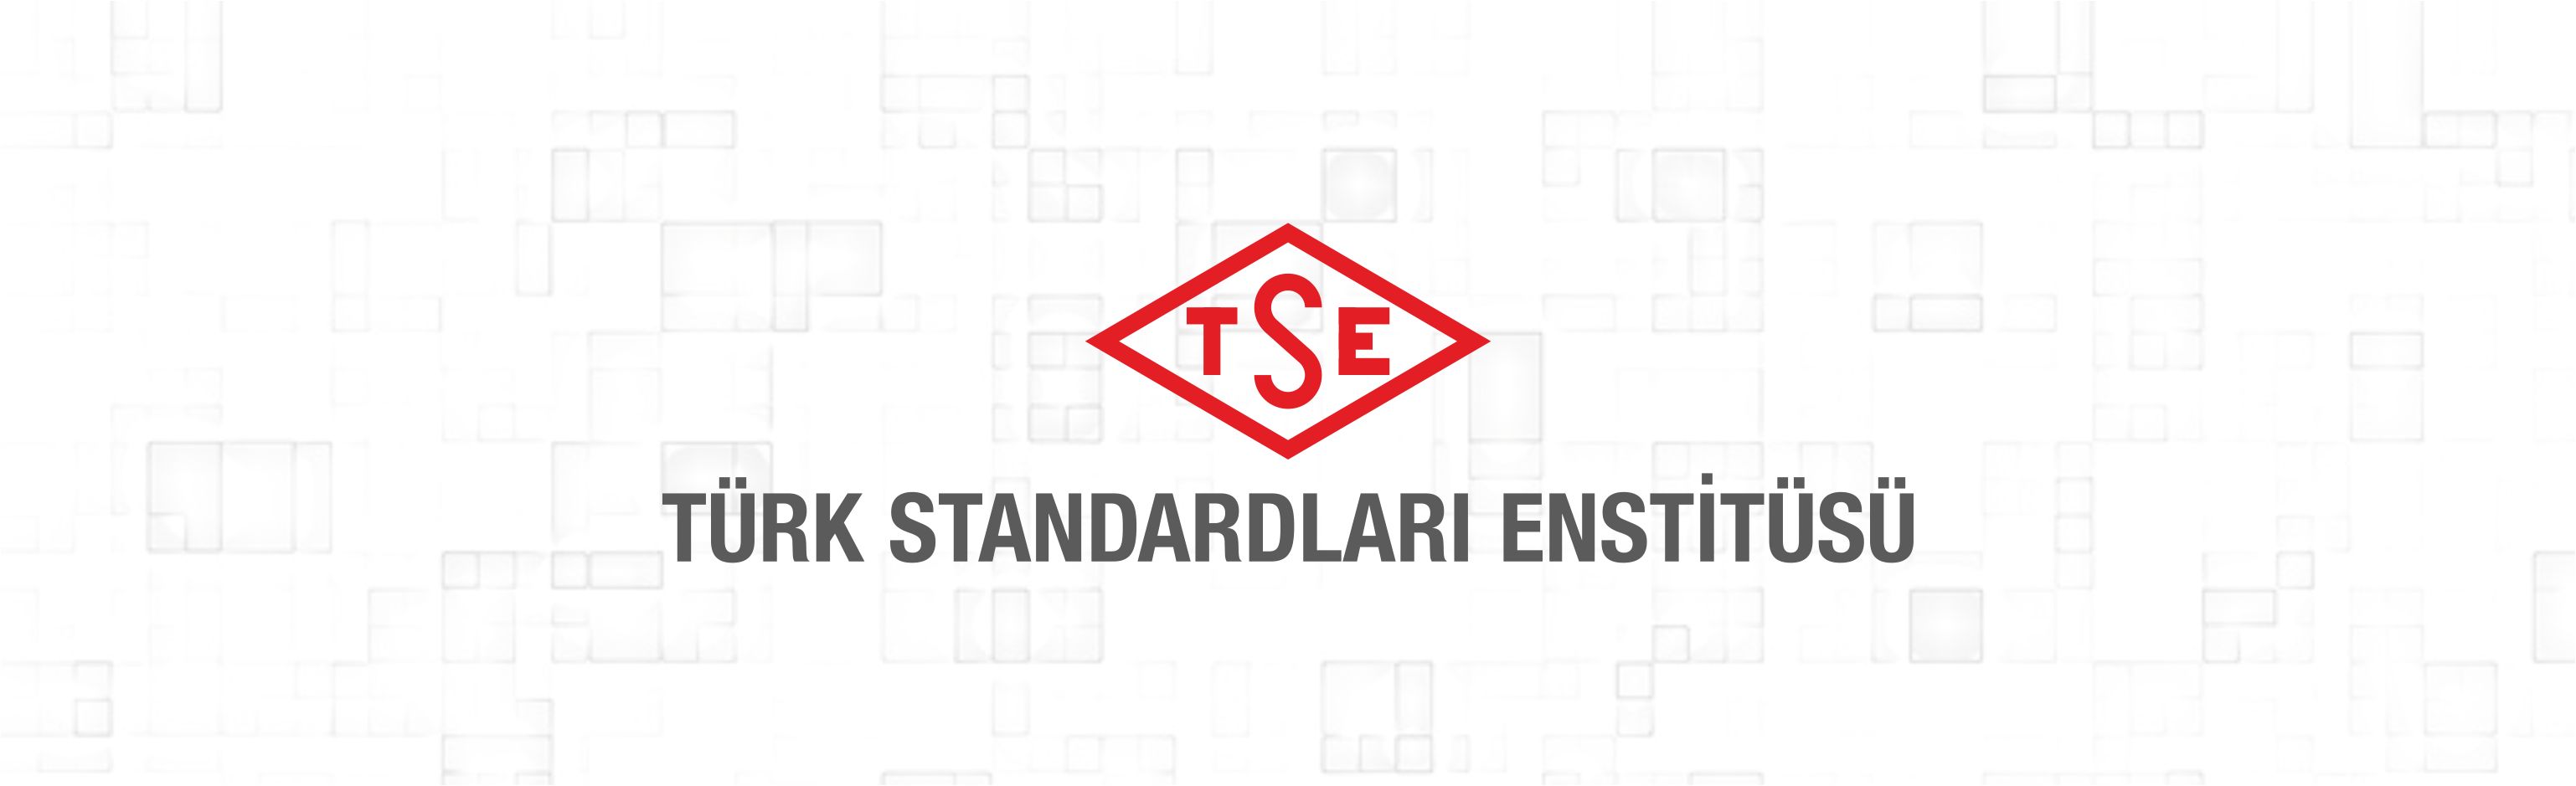 Türk Standardları Enstitüsü Sözleşmeli Bilişim Personeli Alacak